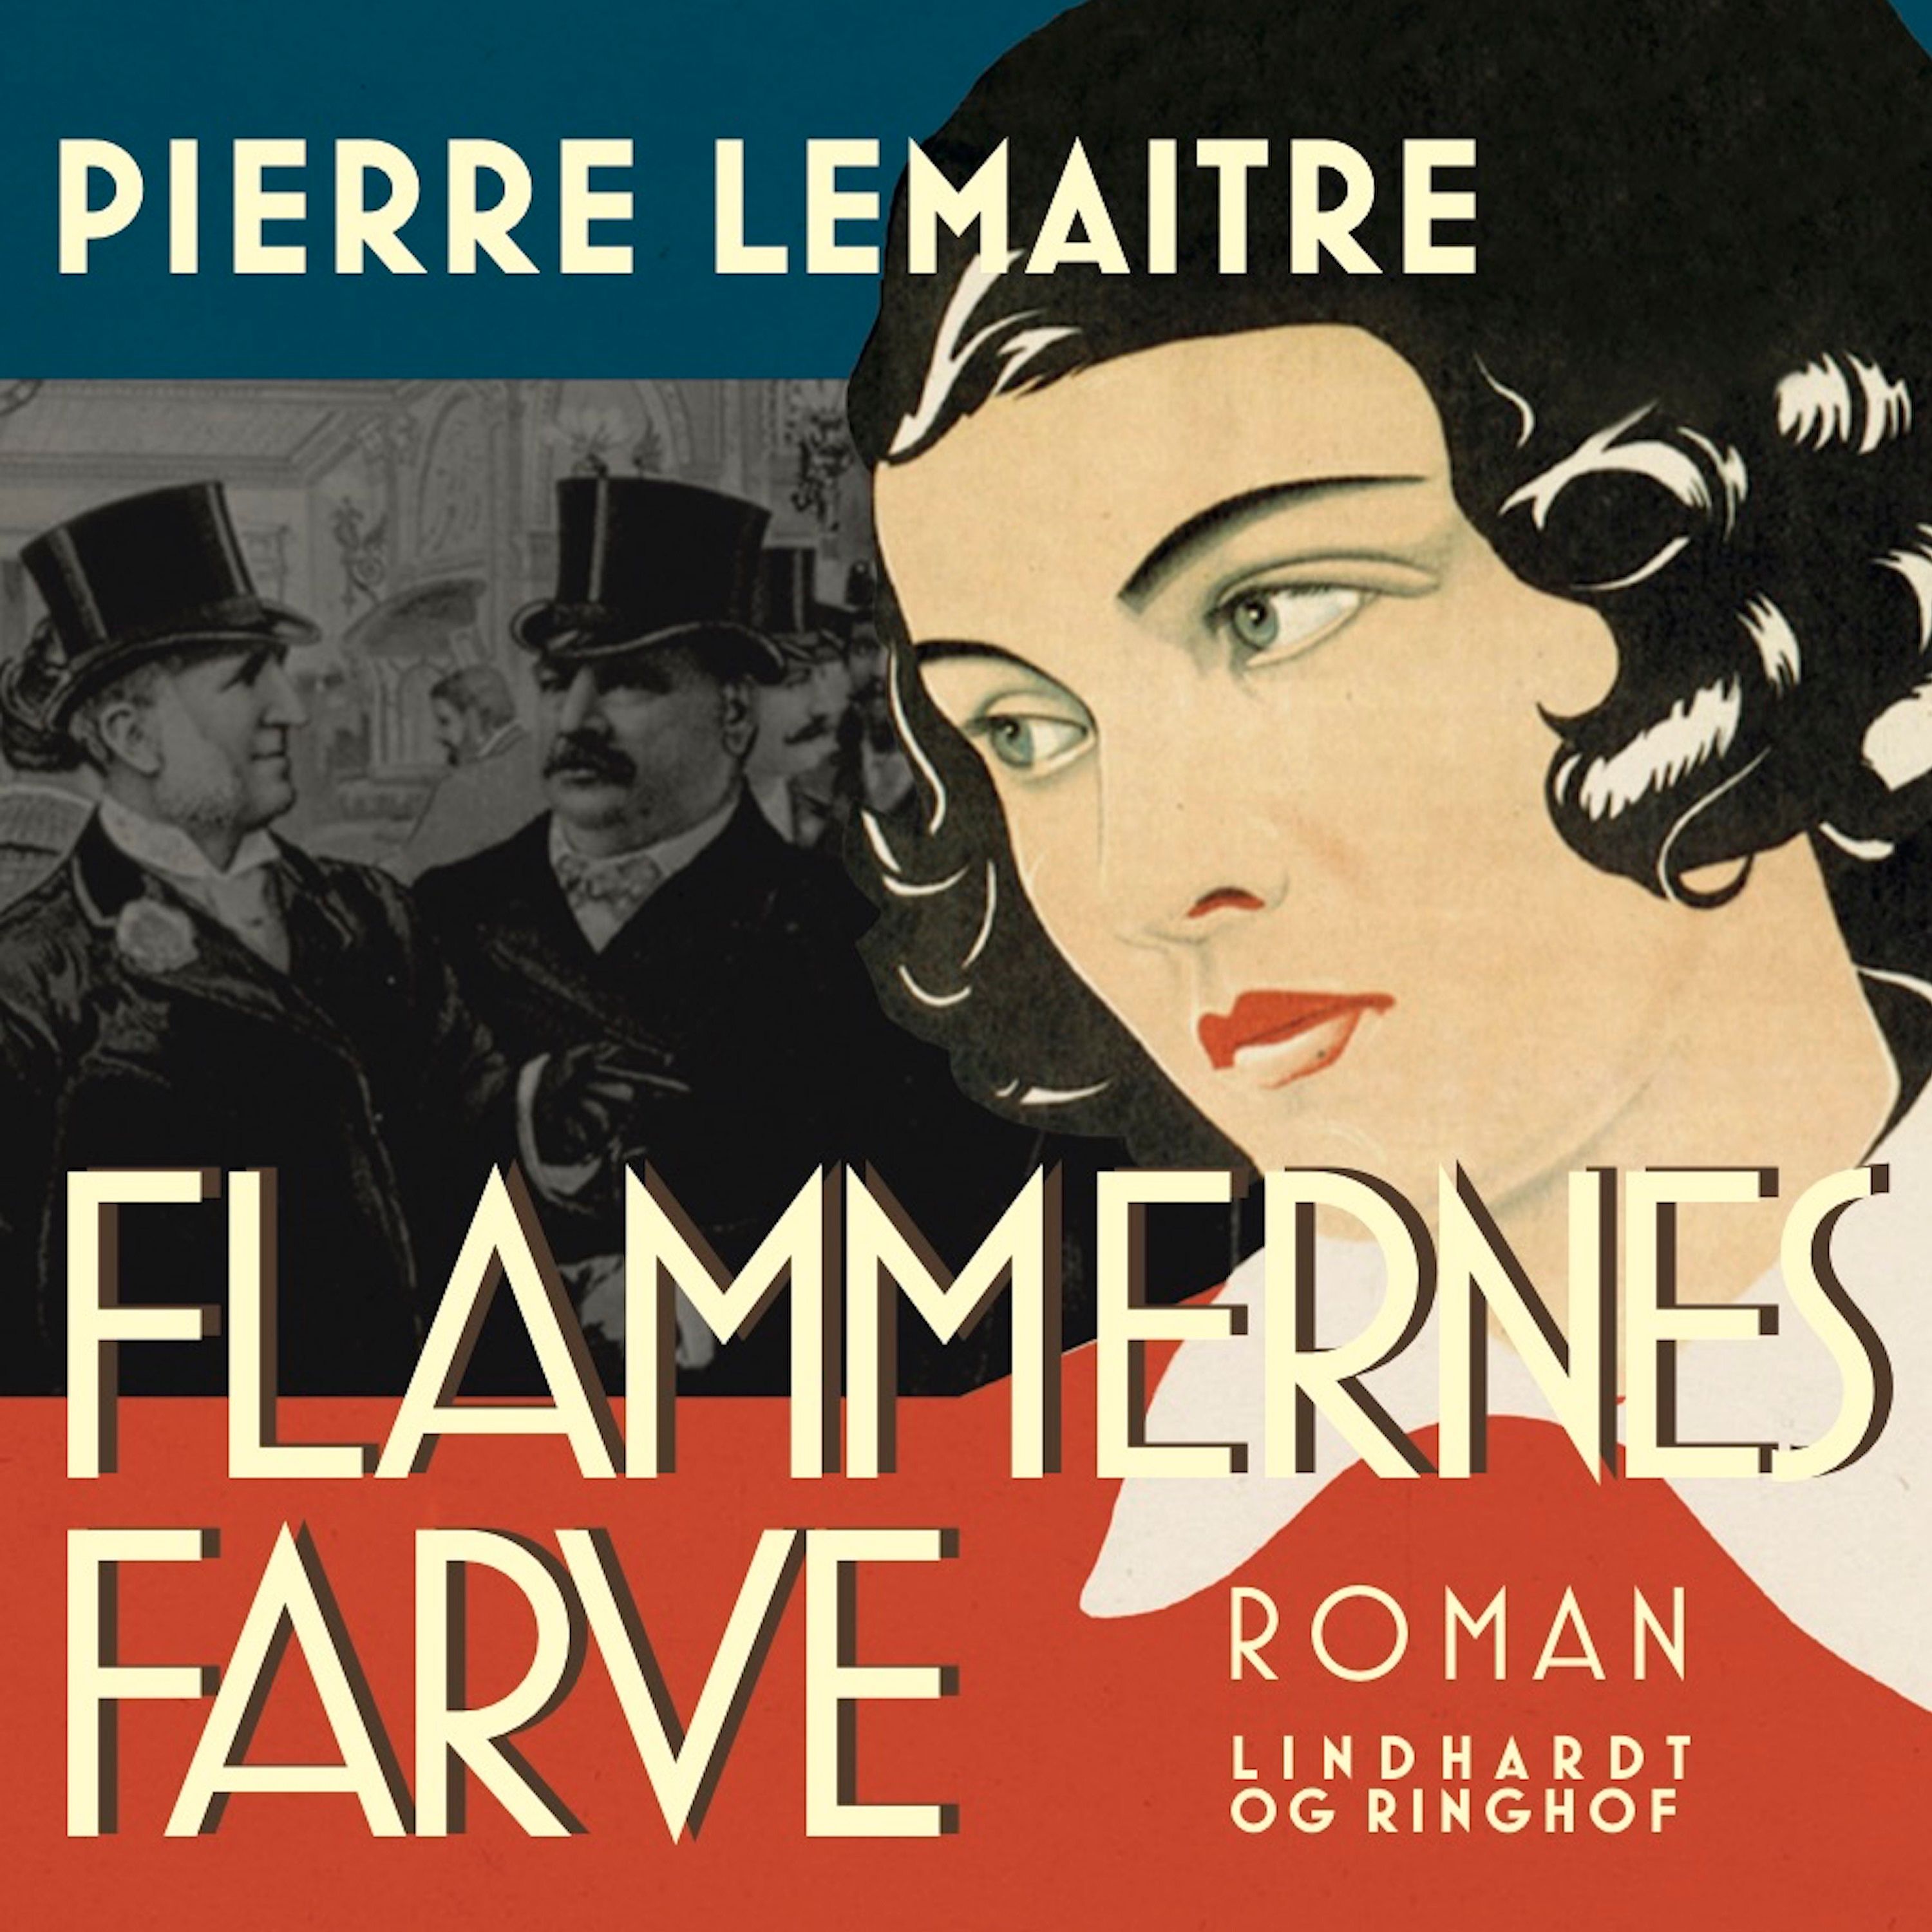 Flammernes farve, ljudbok av Pierre Lemaitre